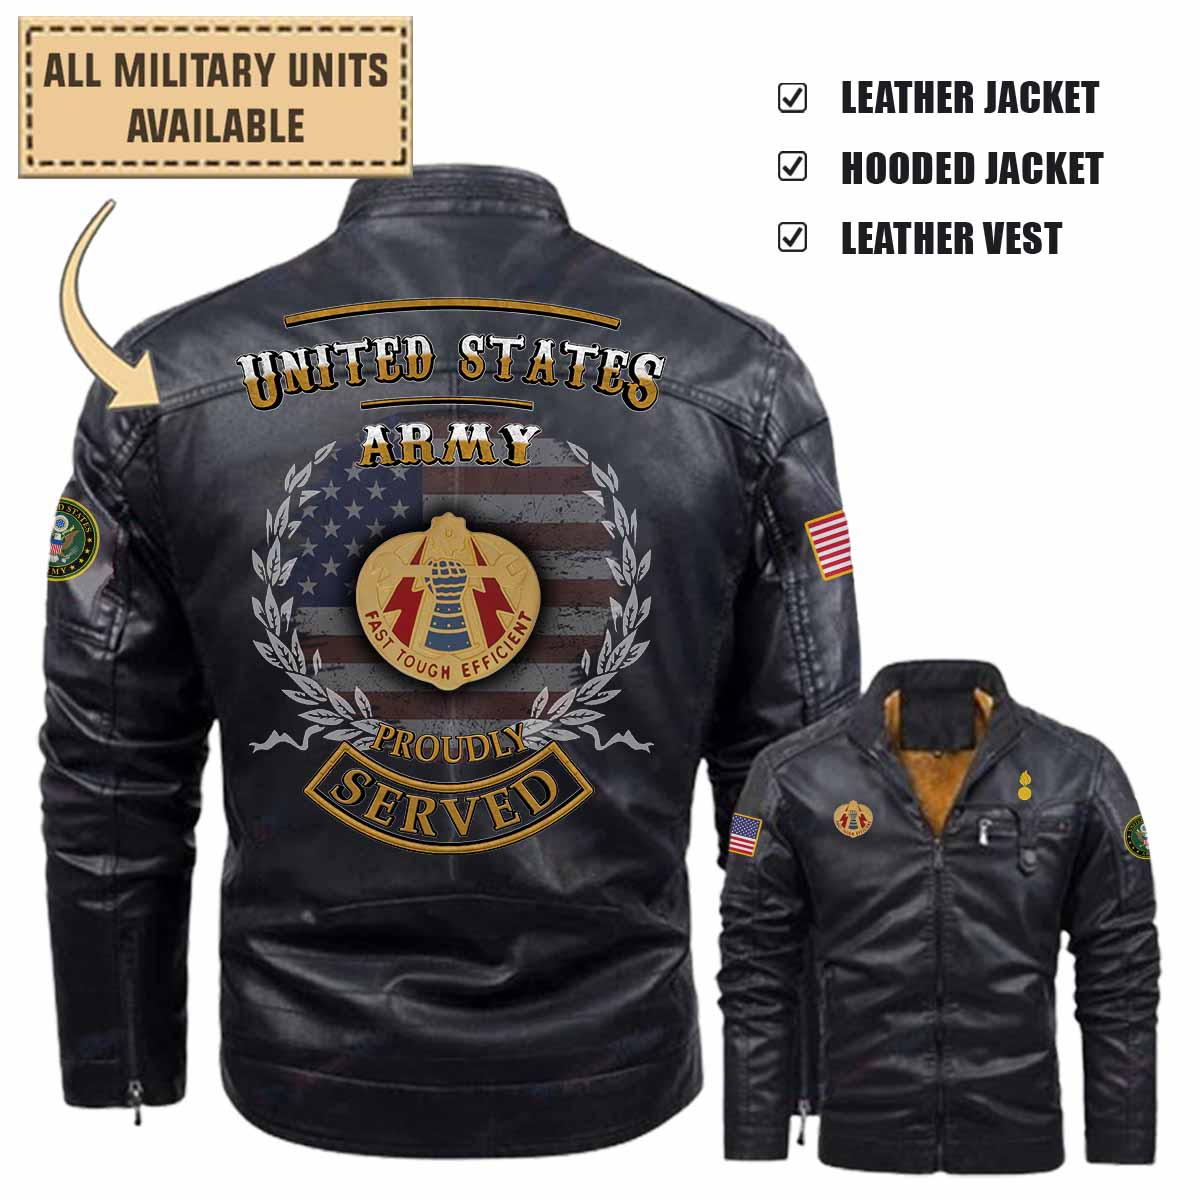 242nd ord bn 242nd ordnance battalionleather jacket and vest